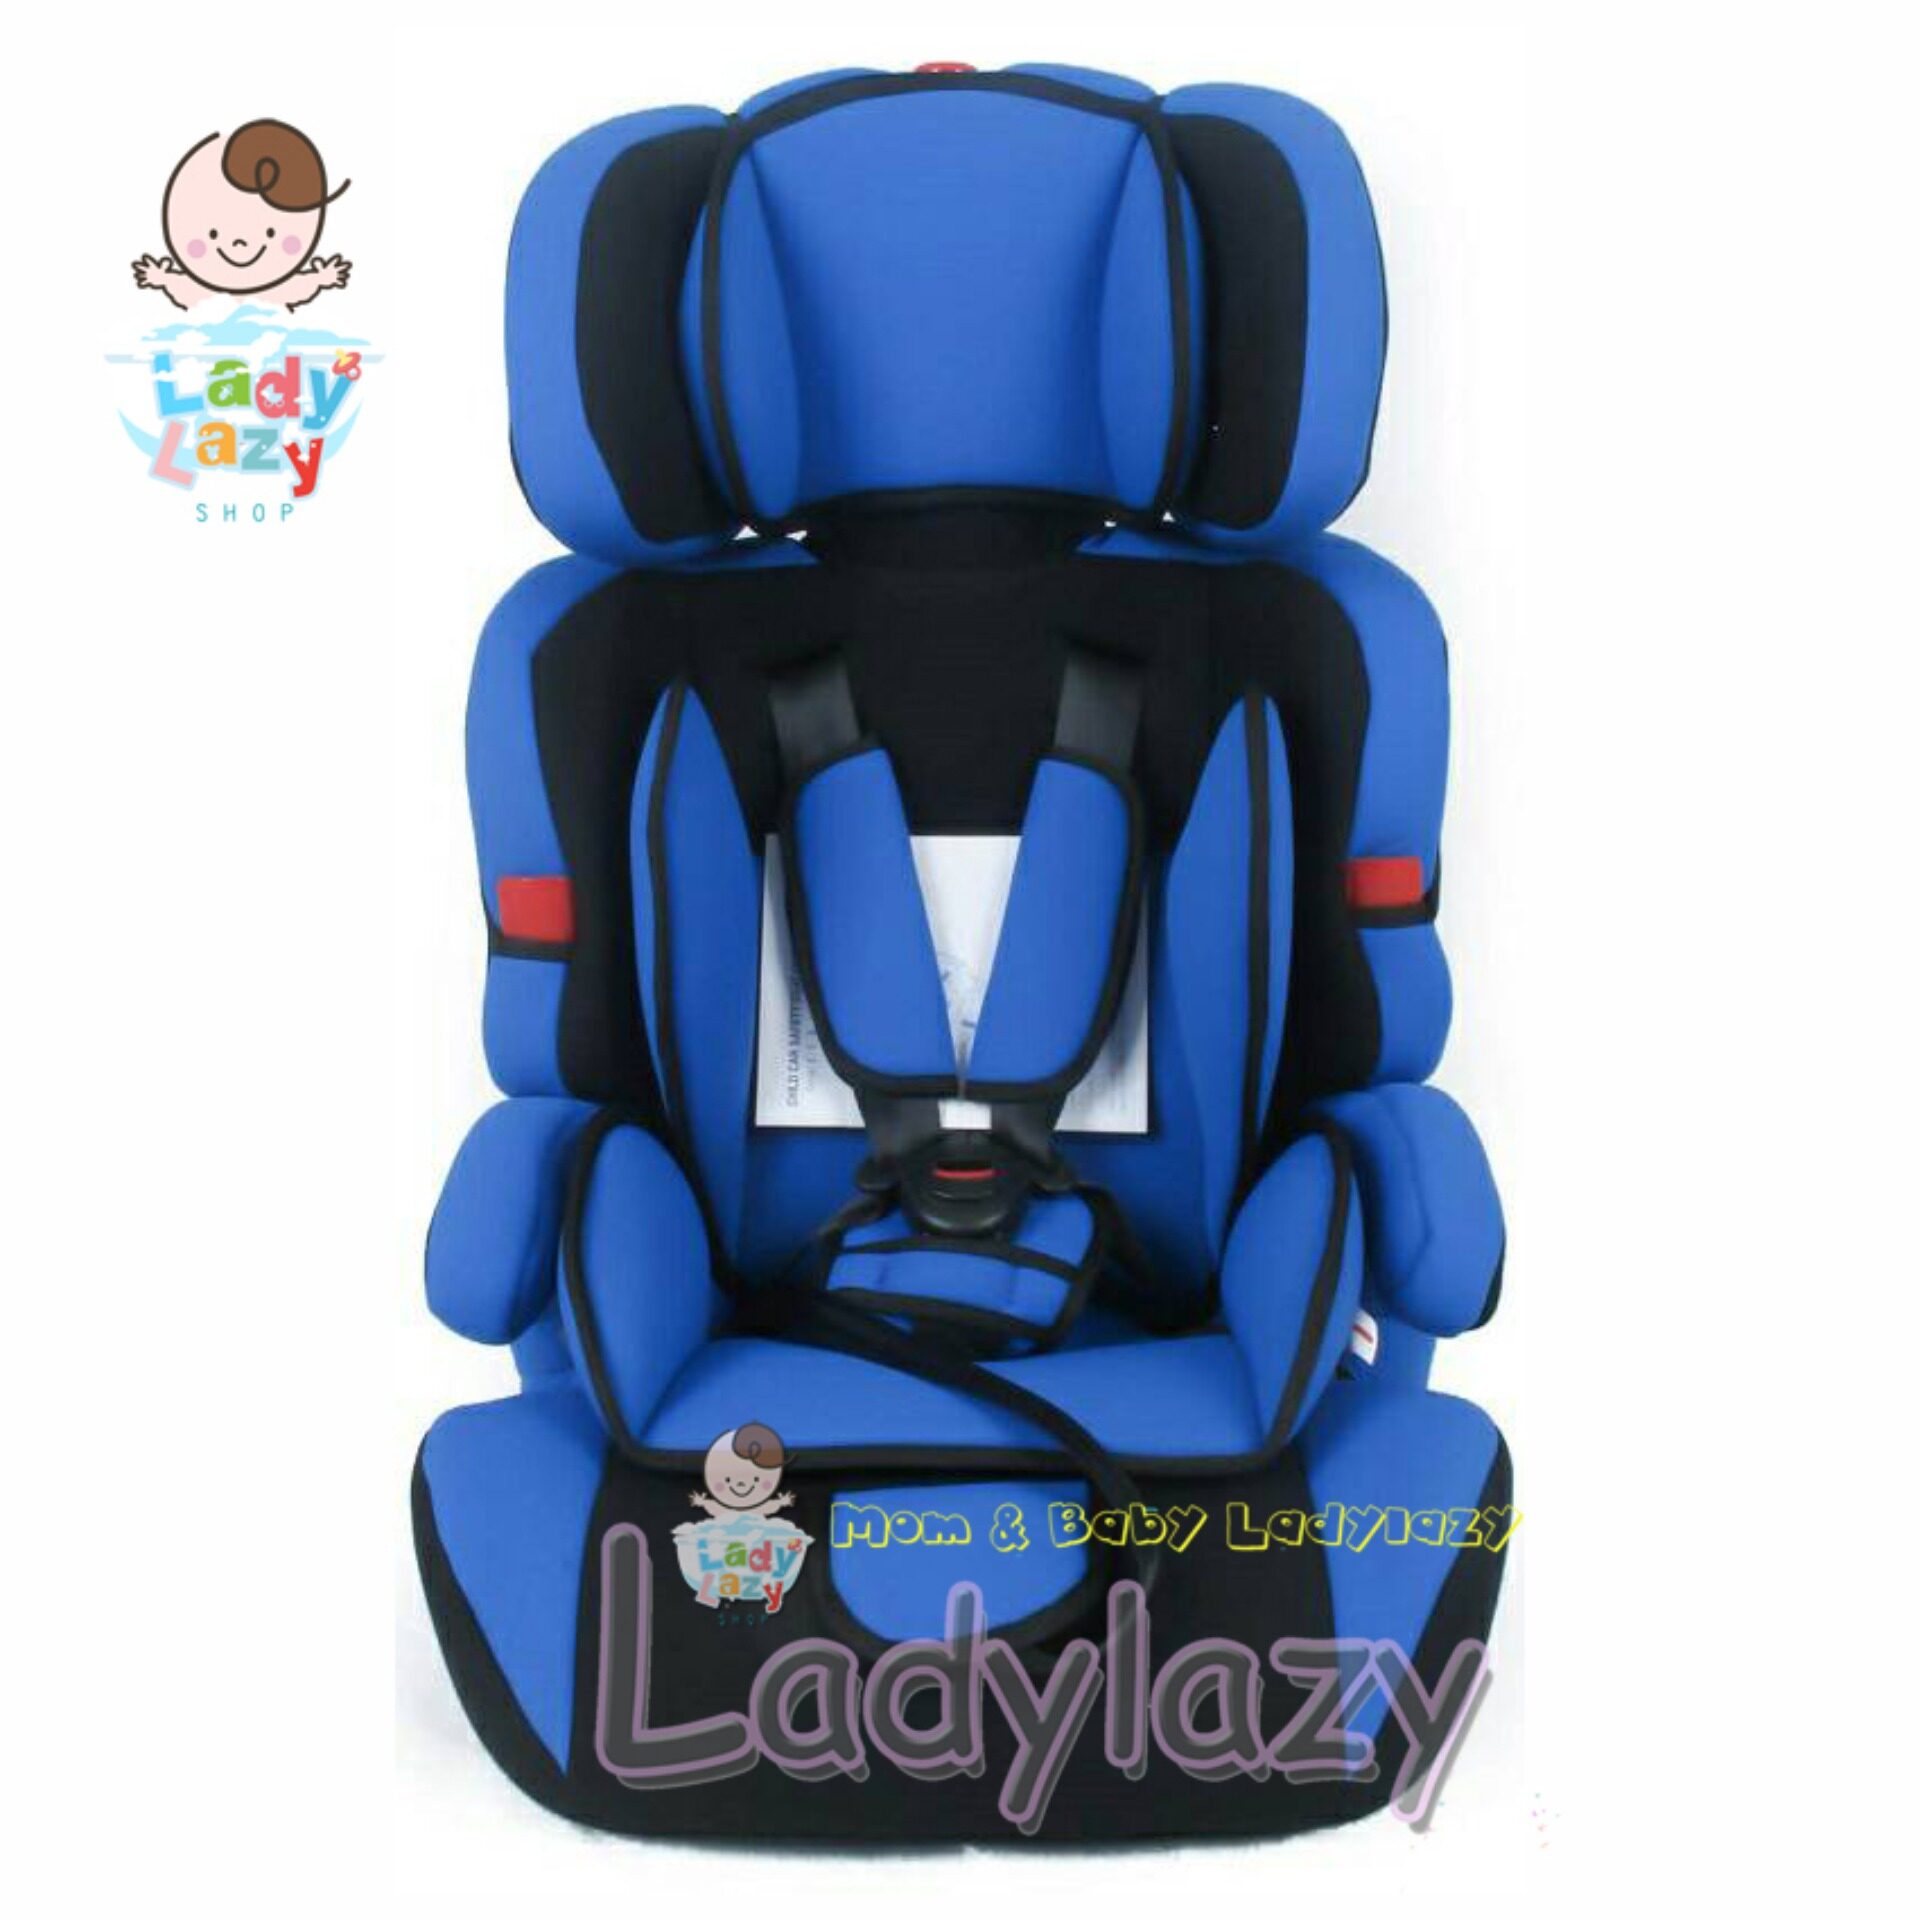 แนะนำ ladylazyคาร์ซีท(car seat) ที่นั่งในรถยนต์ขนาดใหญ่ No.SQ303 สีน้ำเงิน